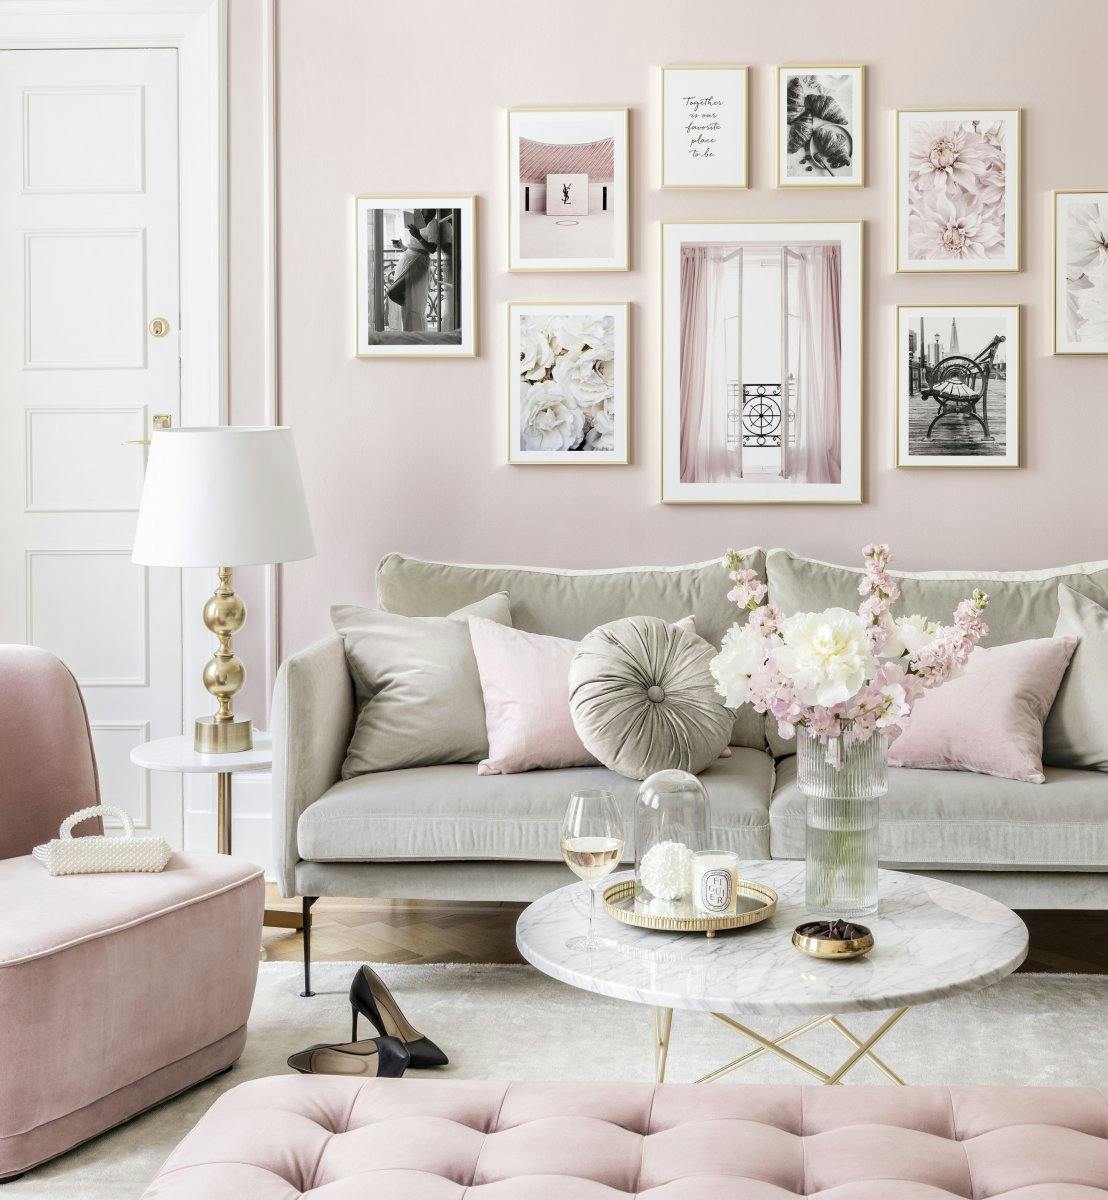 Galeria plakatow rozowa moda plakaty modne obrazy kwiaty rozowy salon